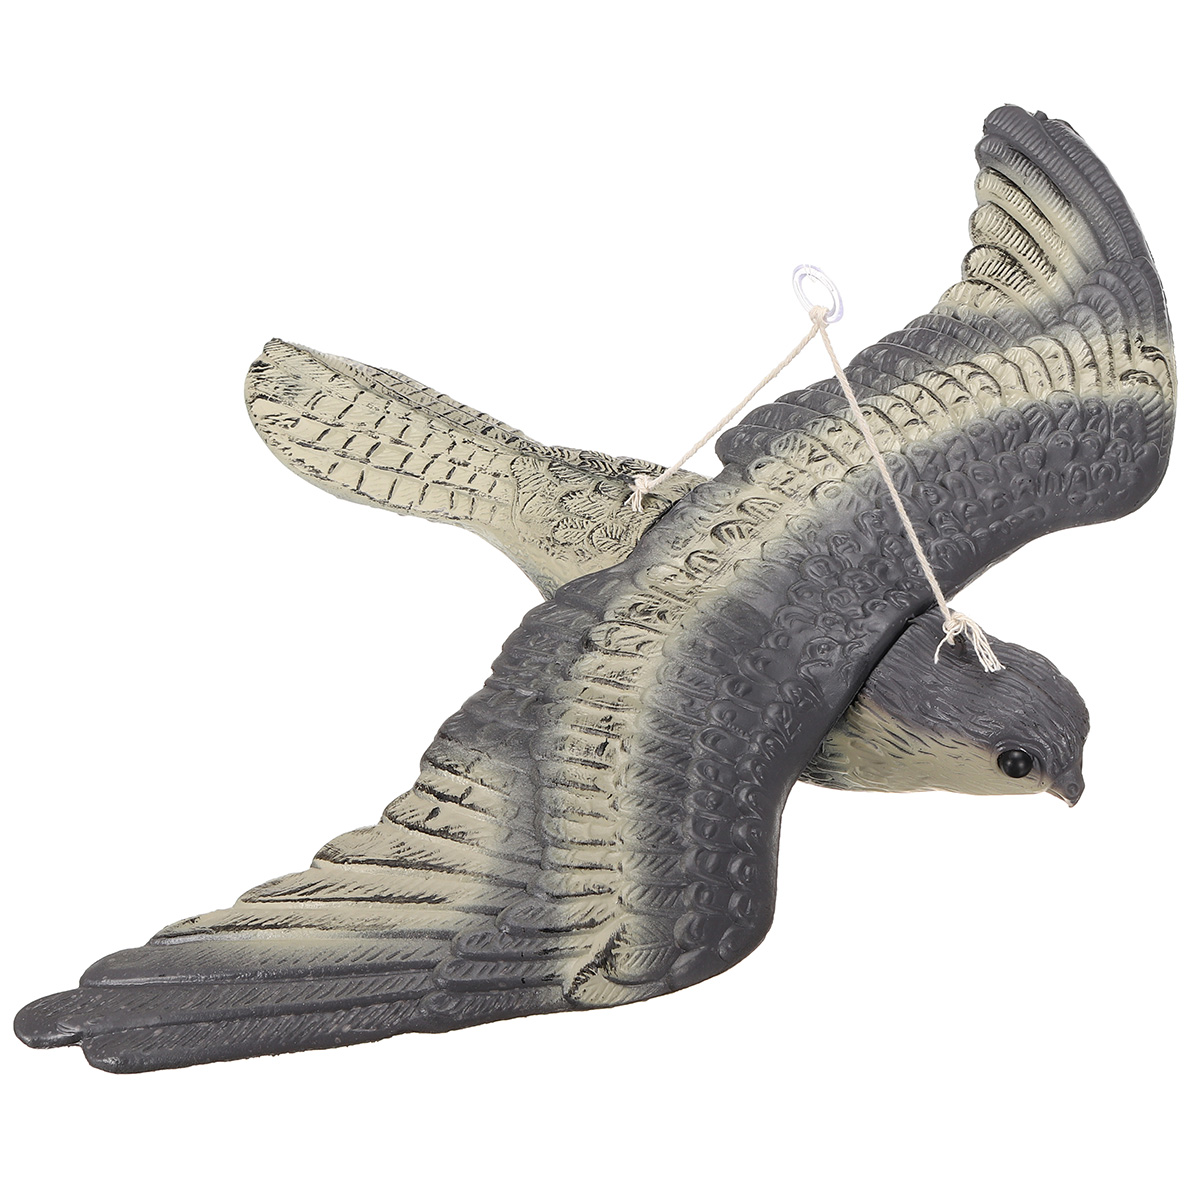 Falcon-Hawk-Hunting-Decoy-Bird-Deterrent-Scarer-Outdoor-Garden-Hunting-Equipment-1556624-5